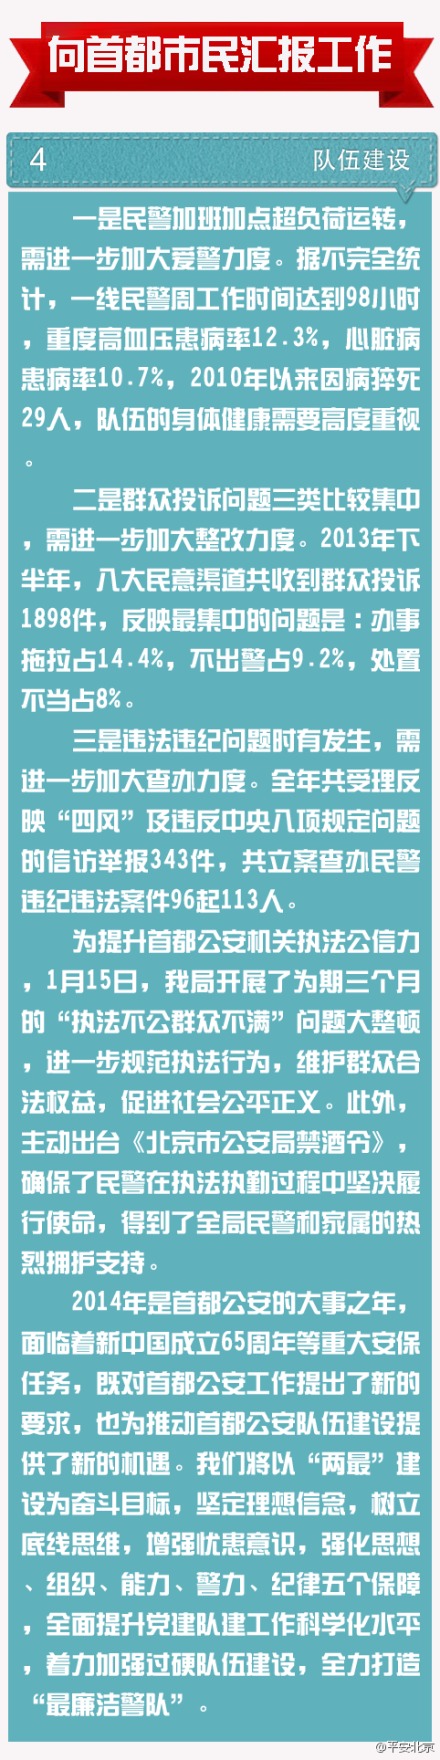 北京市去年立案查办违纪违法民警113人